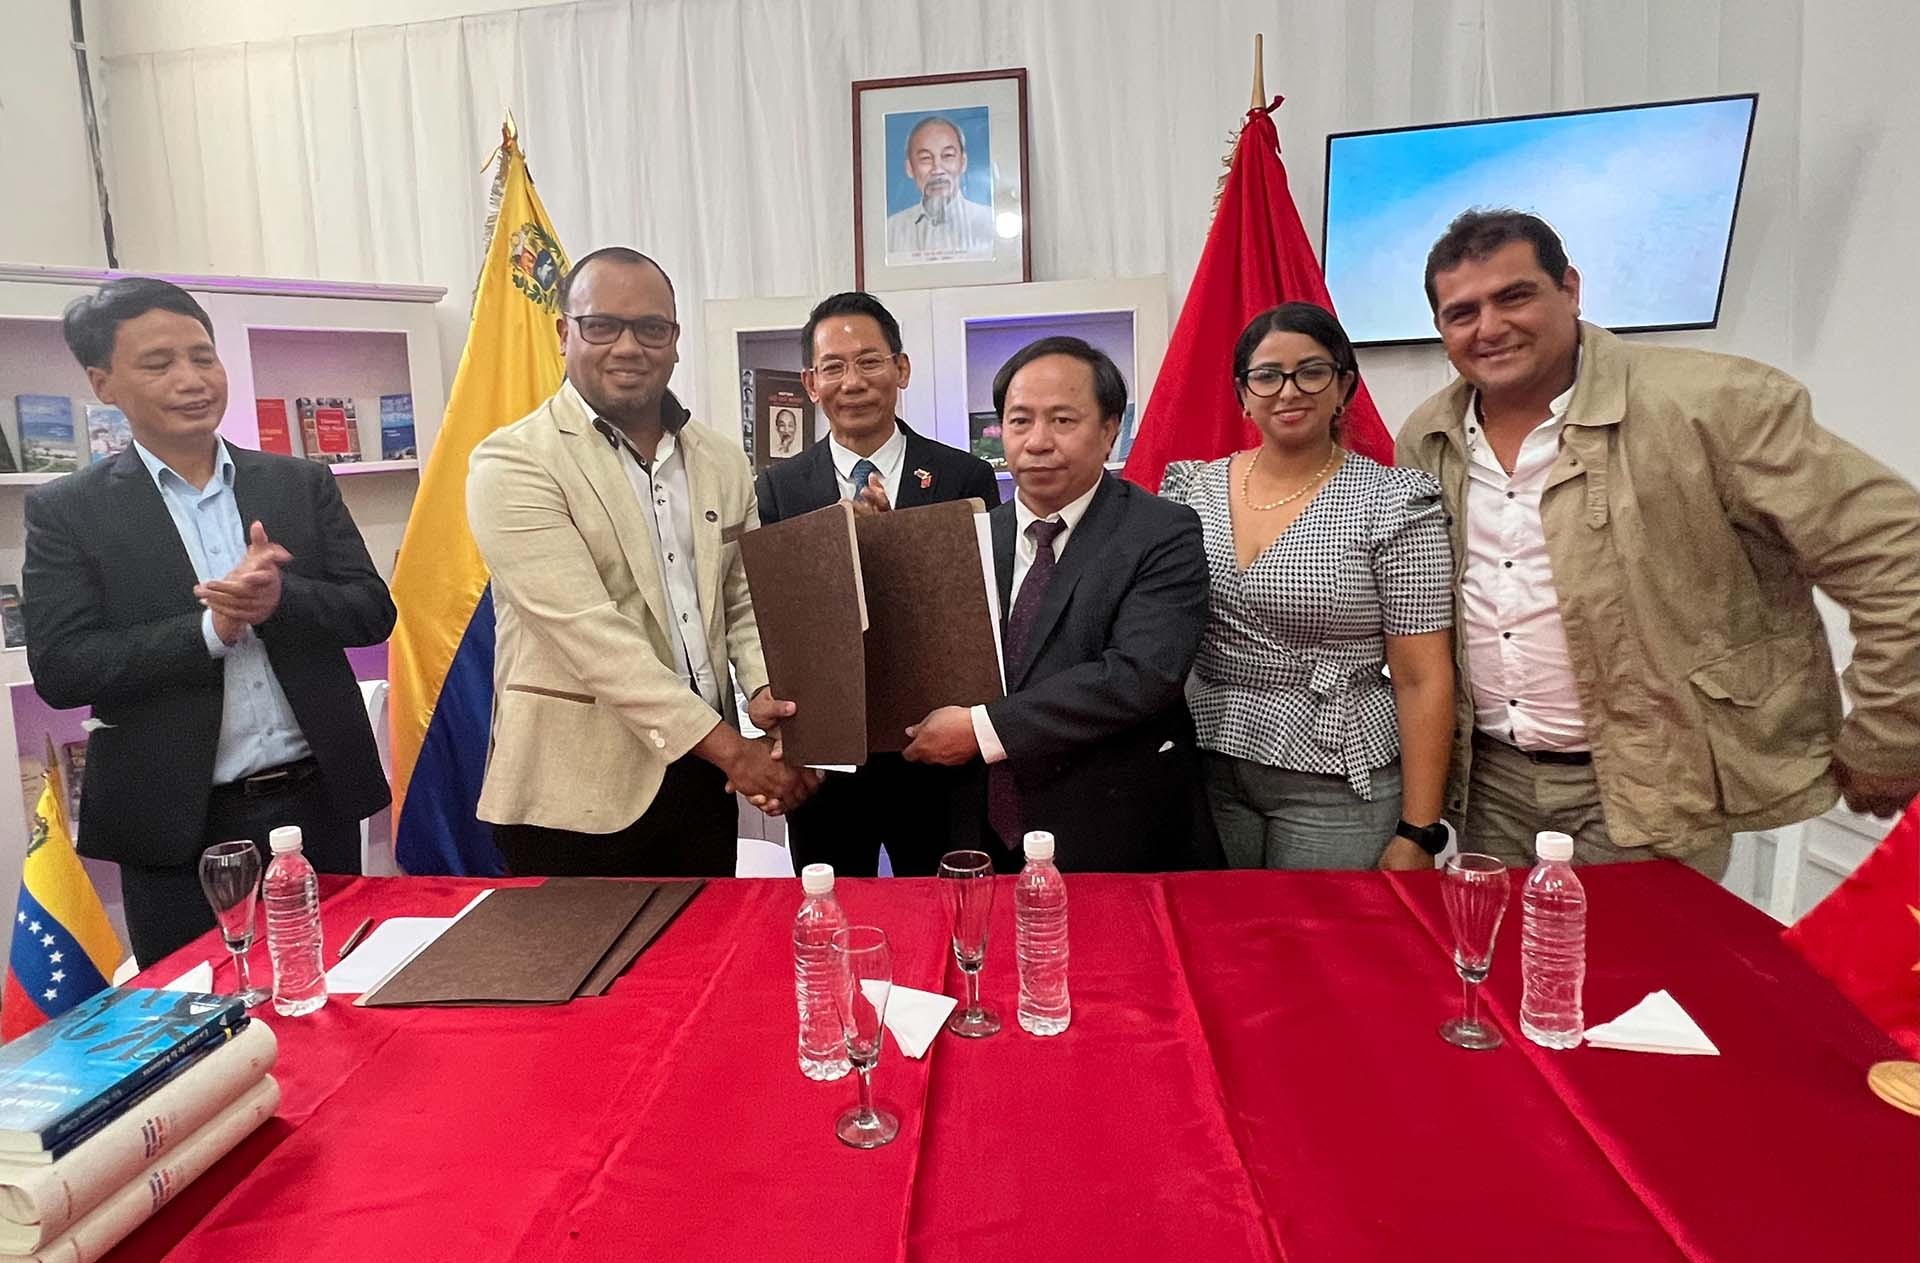 Trường Đại học Thực nghiệm Romulo Gallegos và Viện Khoa học Nông nghiệp Việt Nam tiến hành ký kết bản ghi nhớ về tăng cường hợp tác nông nghiệp giữa hai bên